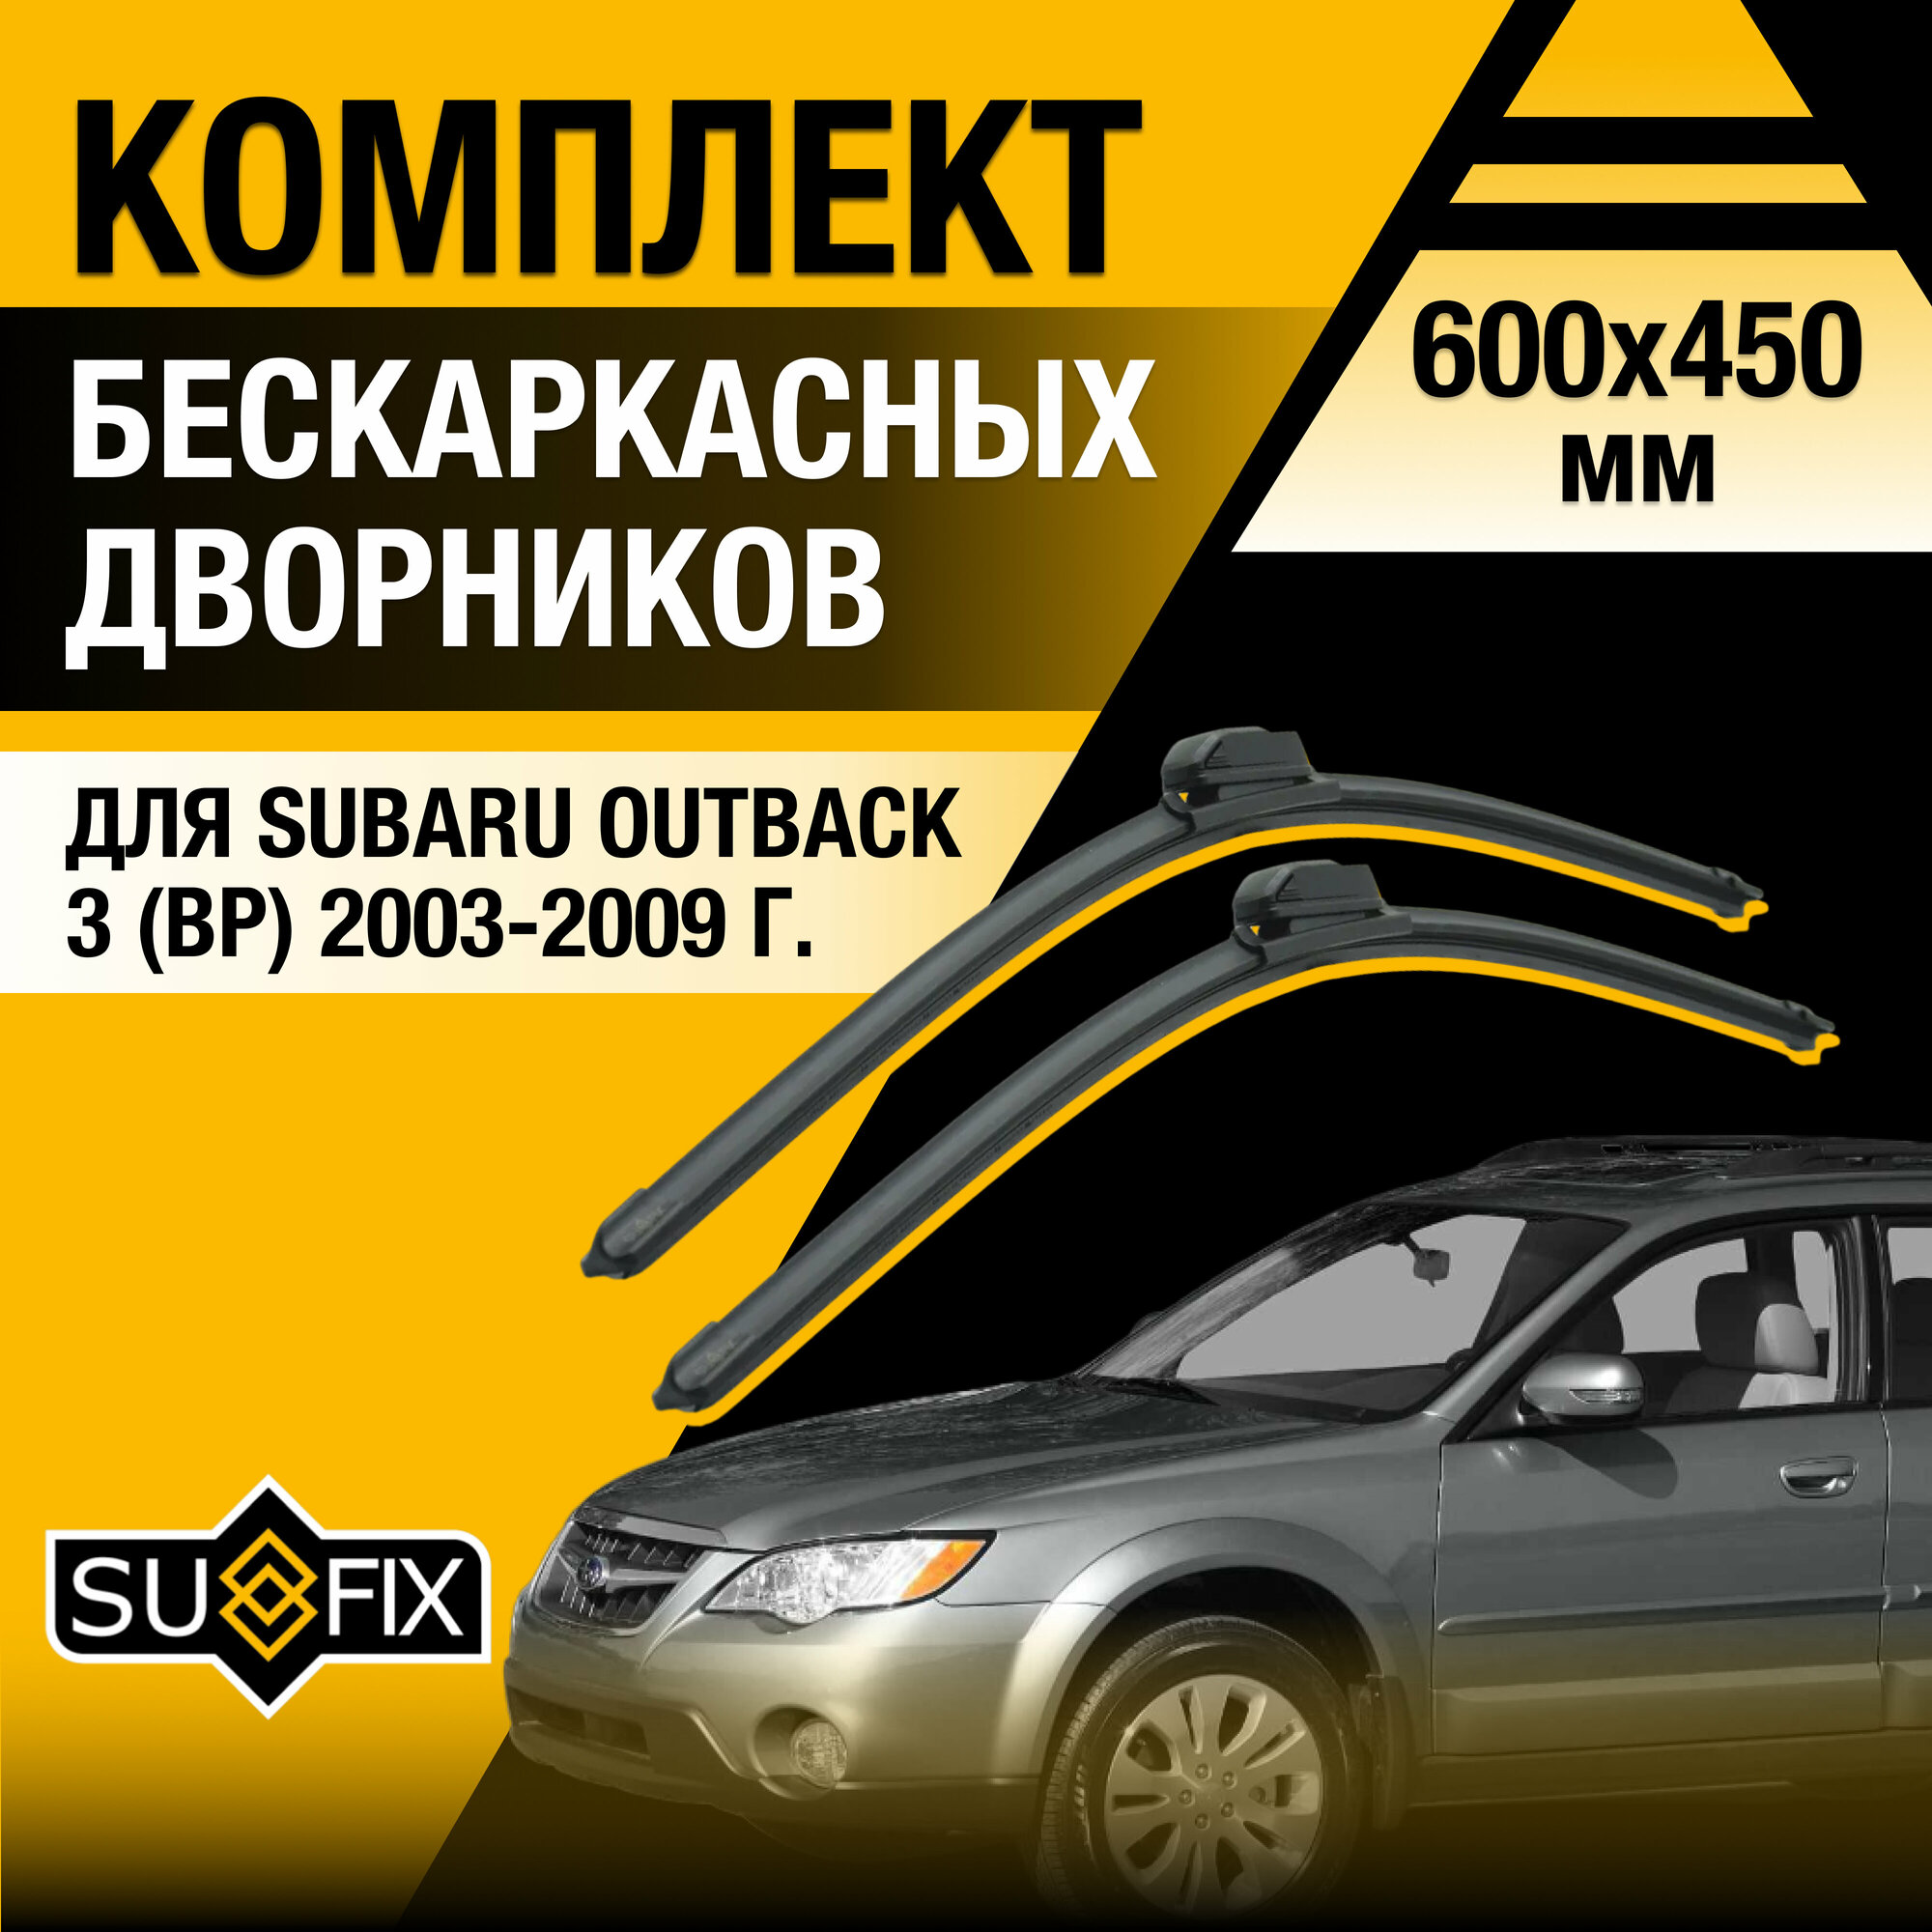 Дворники автомобильные для Subaru Outback 3 (BP) / 2003 2004 2005 2006 2007 2008 2009 / Бескаркасные щетки стеклоочистителя комплект 600 450 мм Субару Аутбек